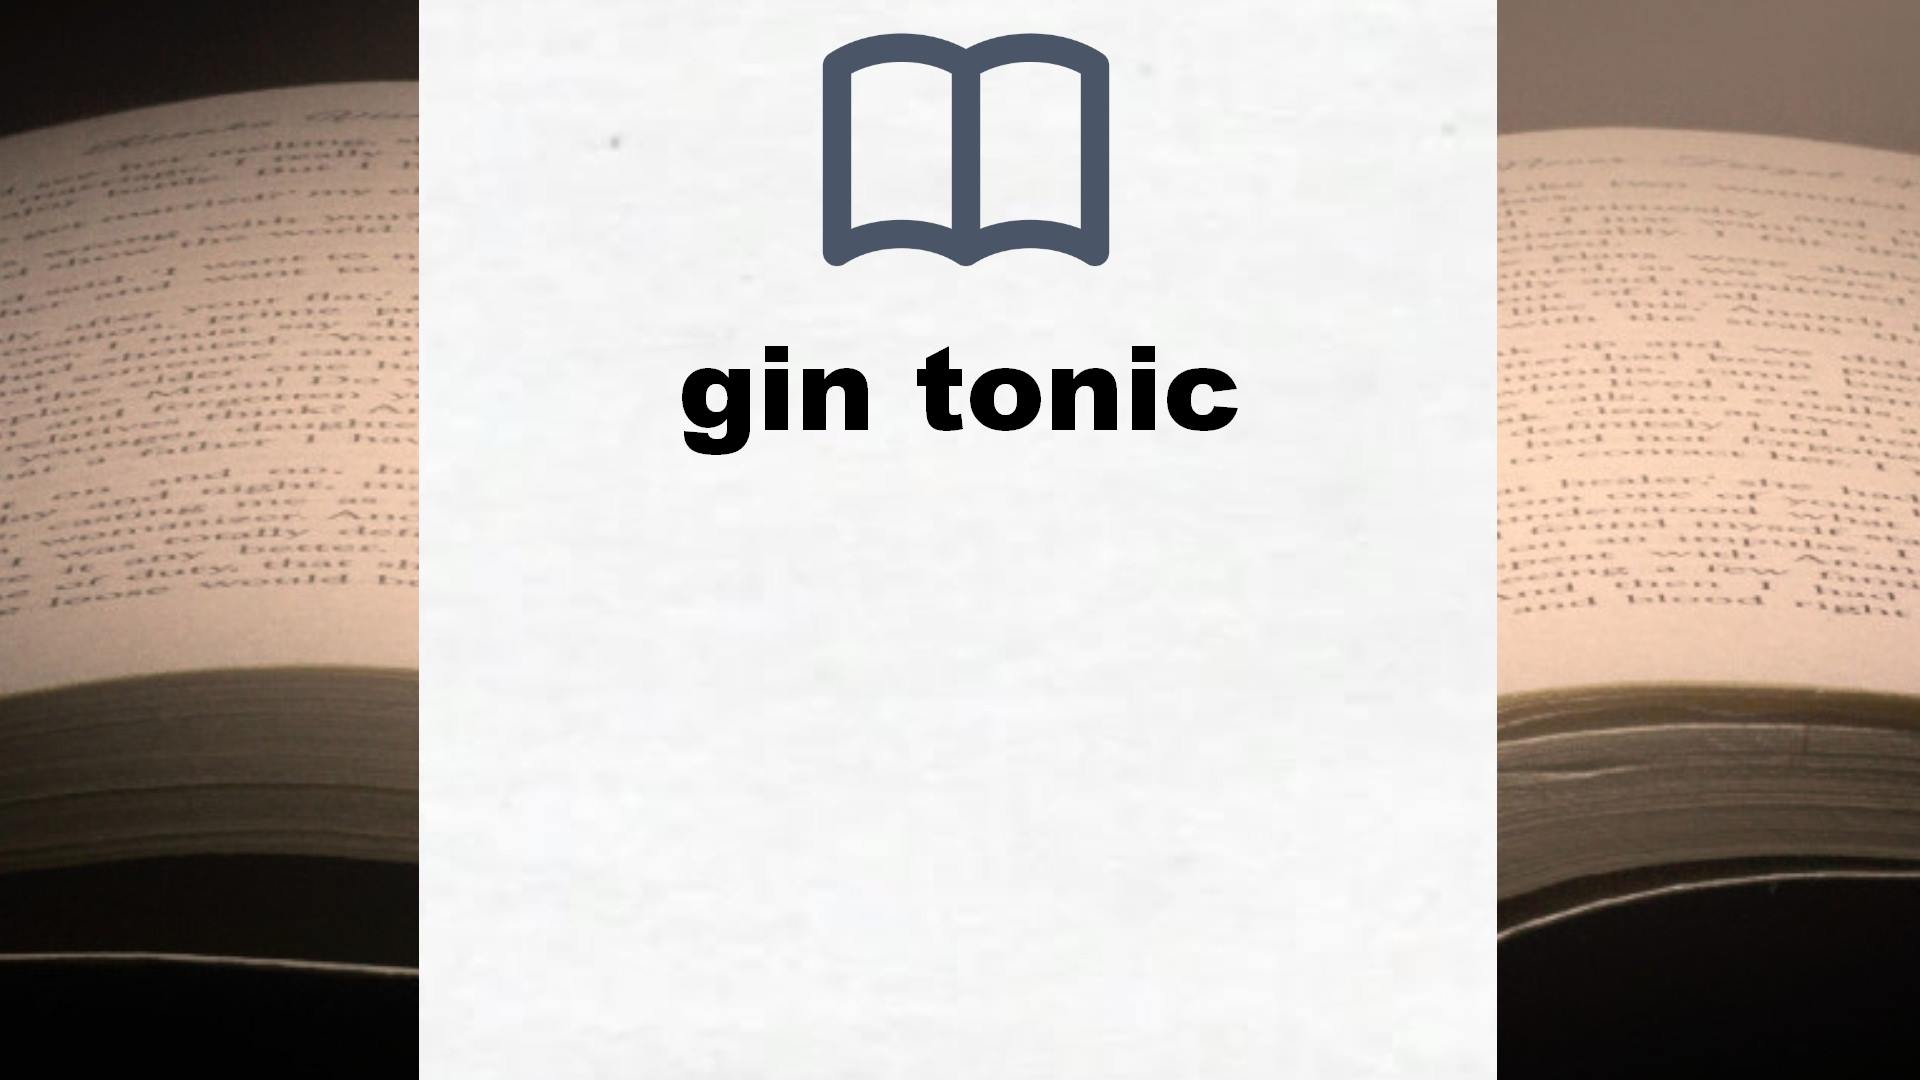 Libros sobre gin tonic